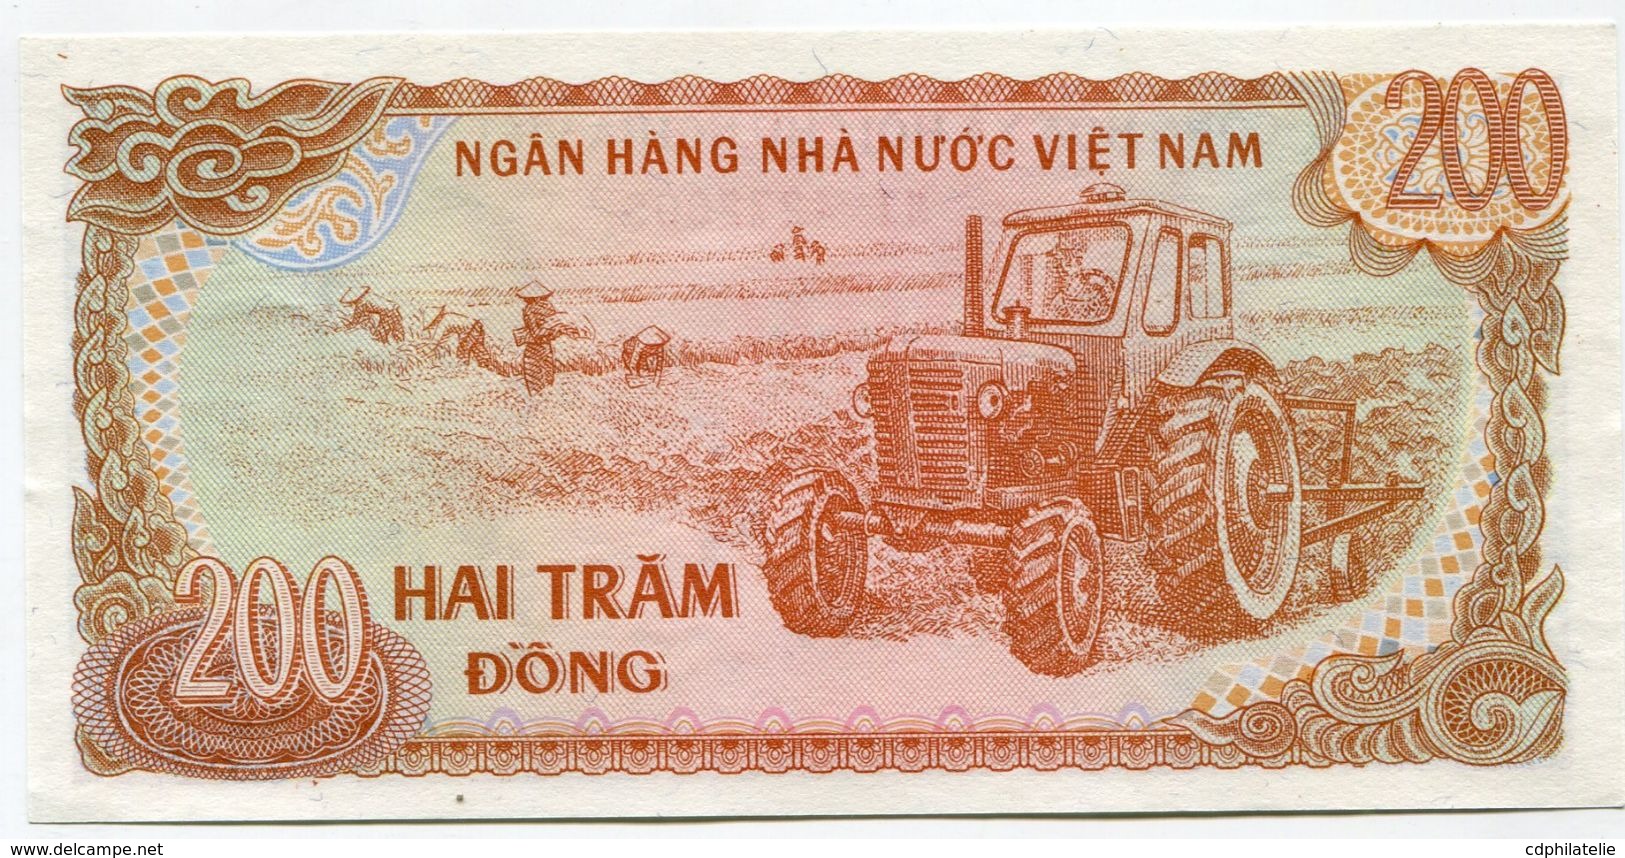 VIET NAM BILLET NEUF DE 200 DONG DE 1987 (Pick 100) - Viêt-Nam